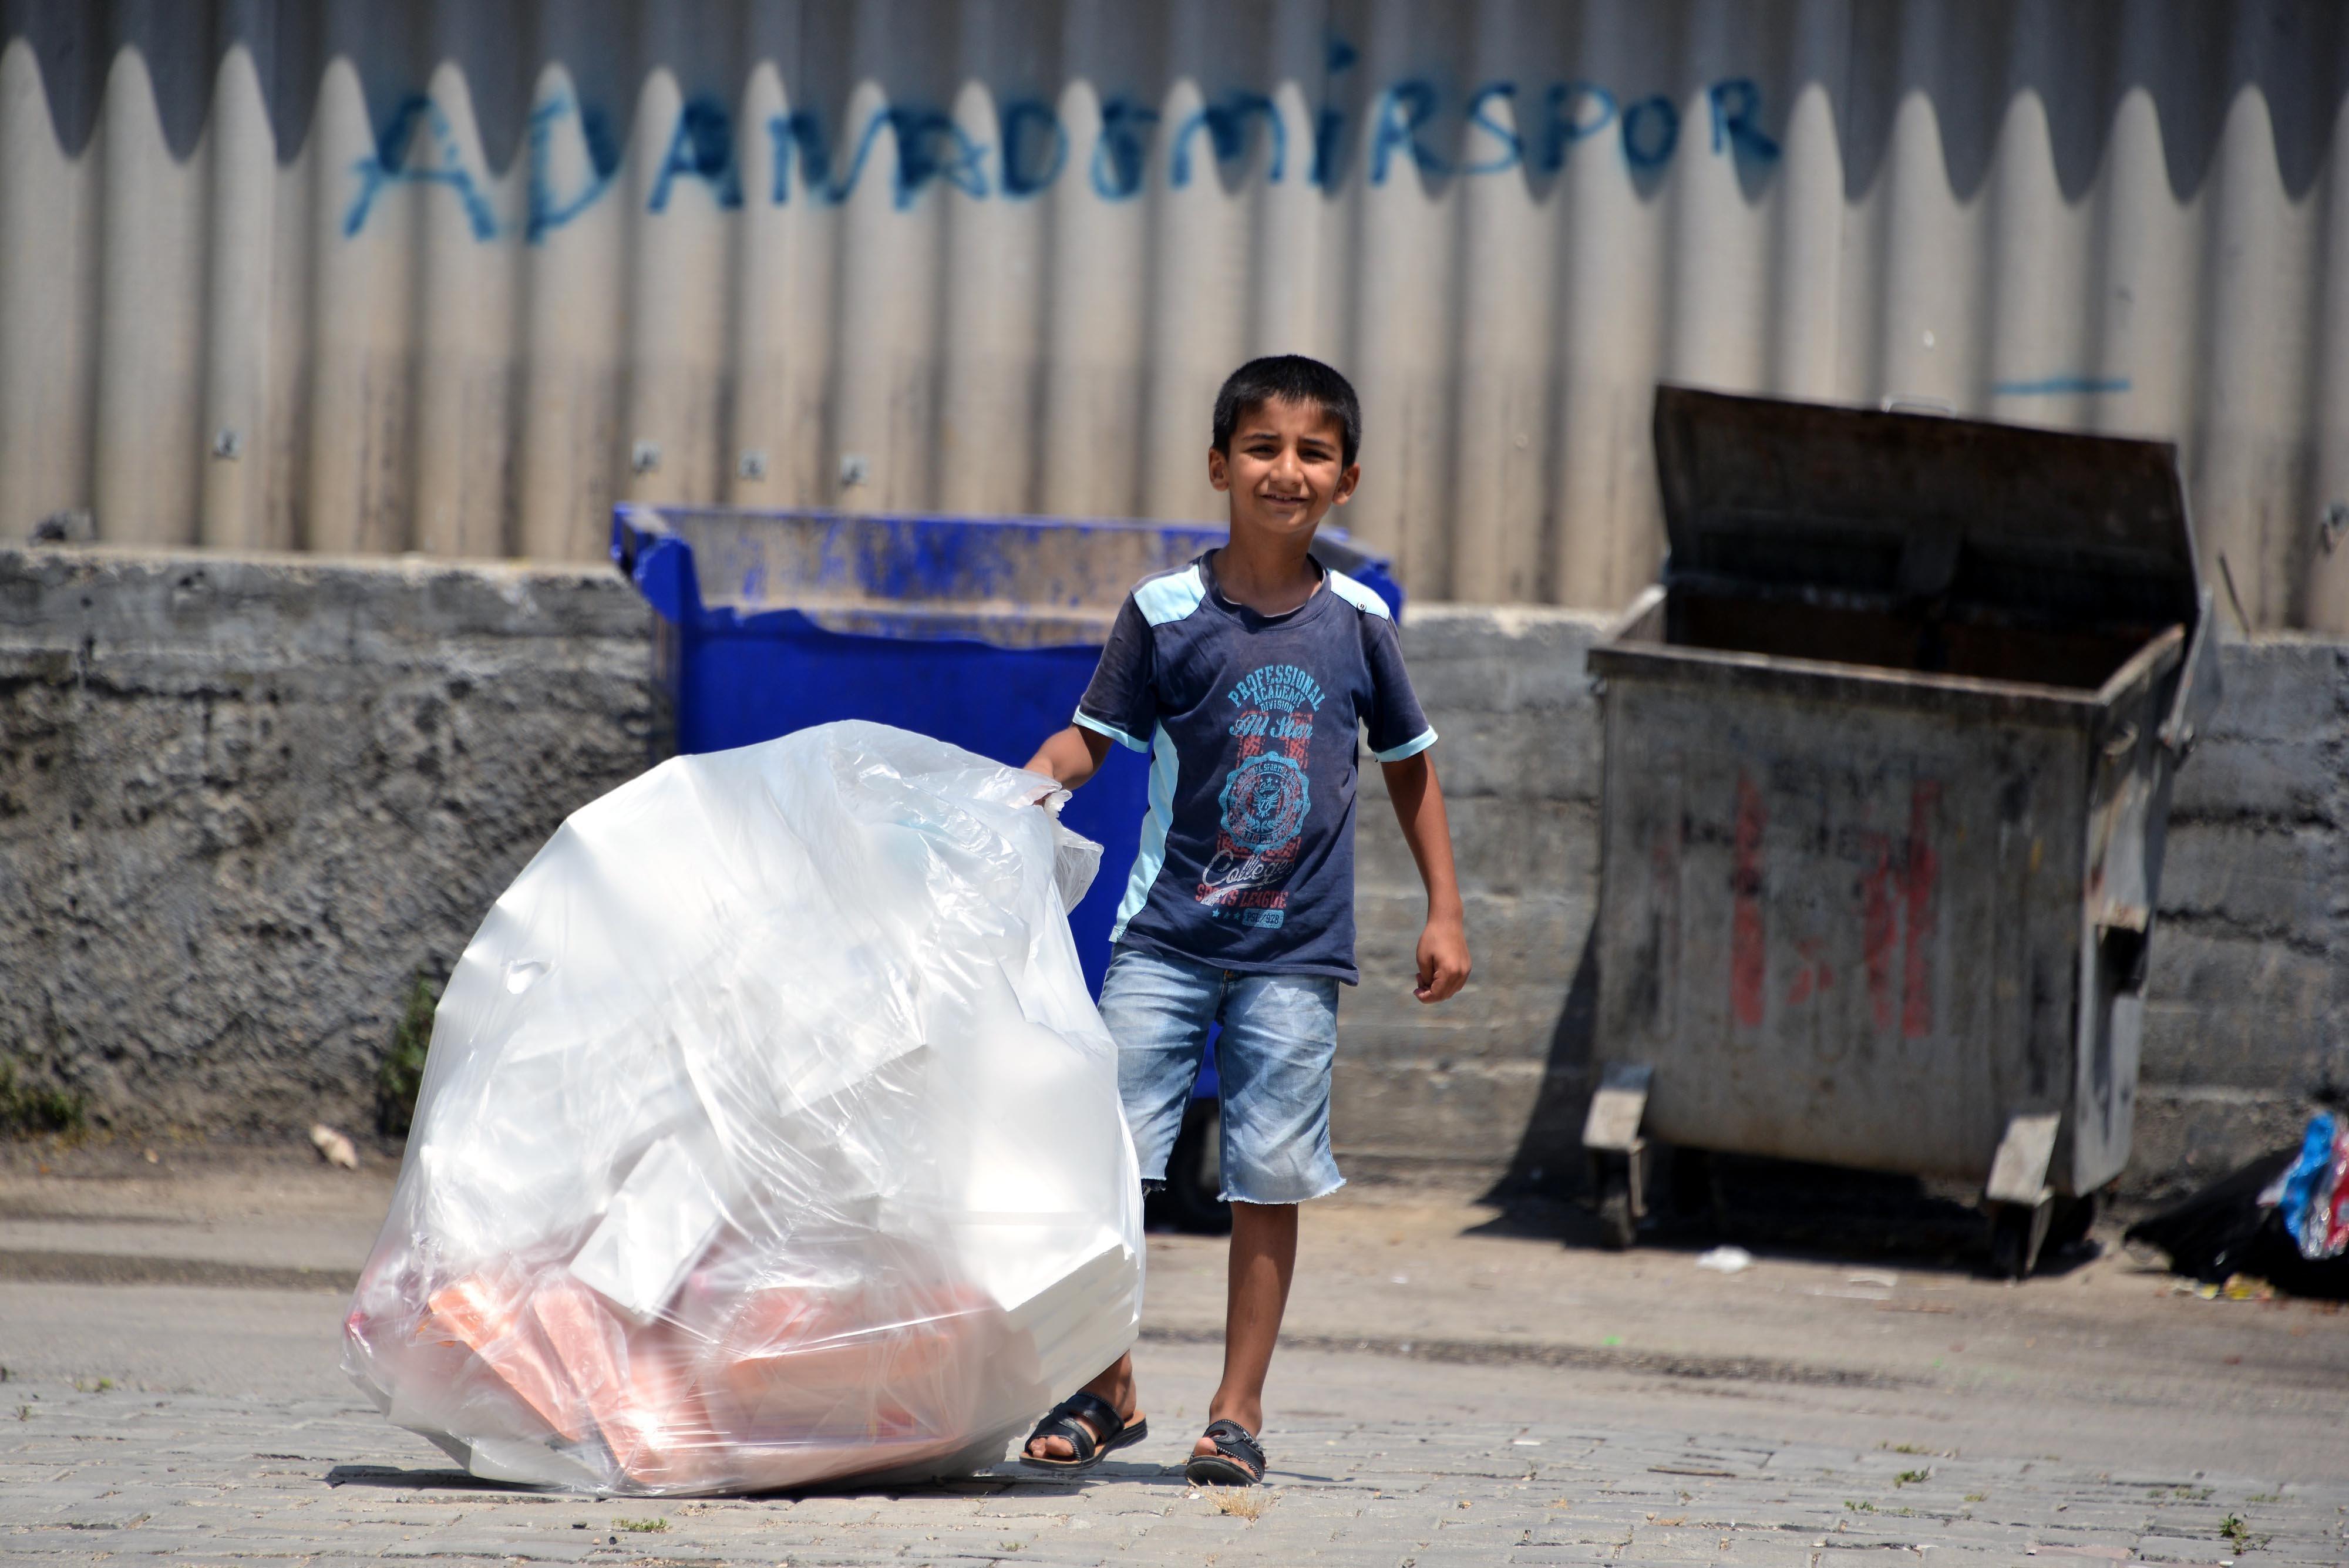 Adanada 11 yaşındaki Cuma, kağıt toplarken görüntülendi